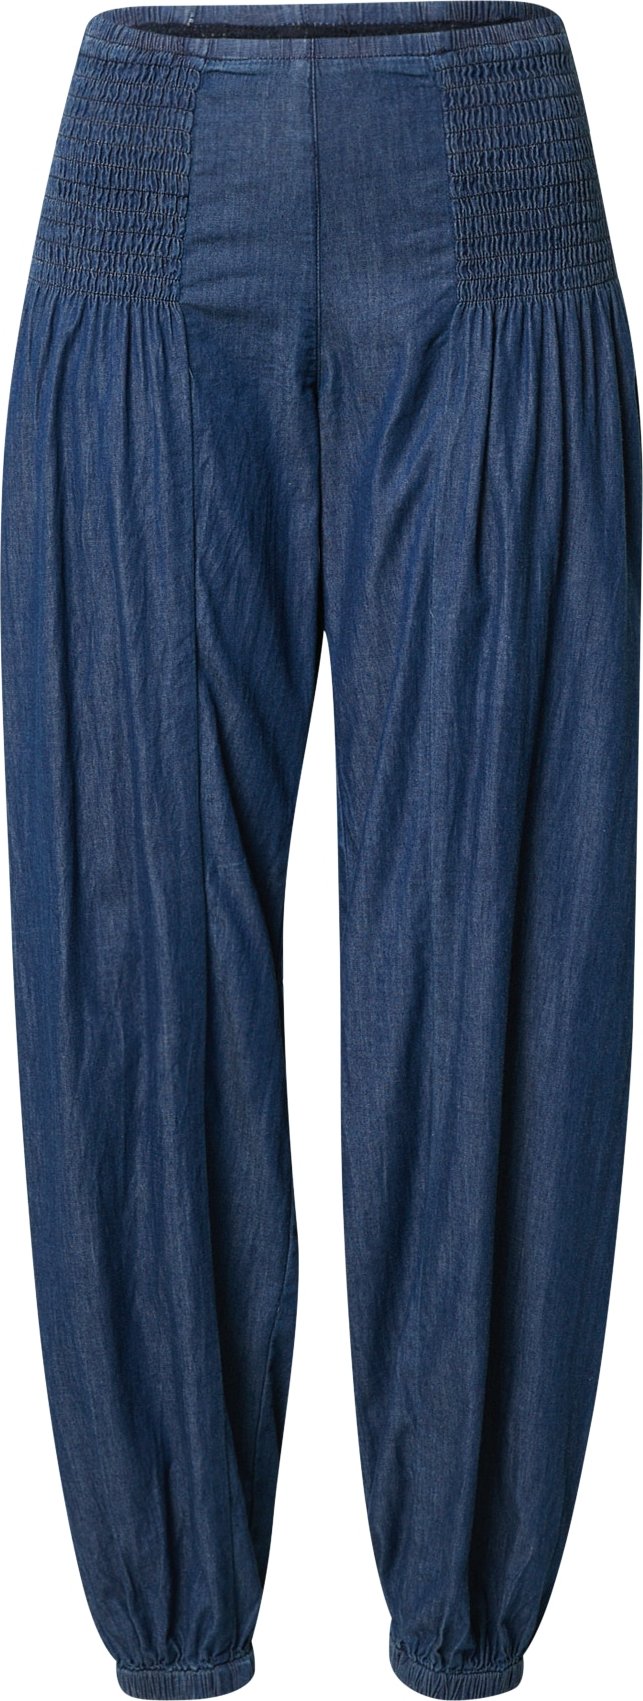 PULZ Jeans Harémové kalhoty 'Jill' modrá džínovina